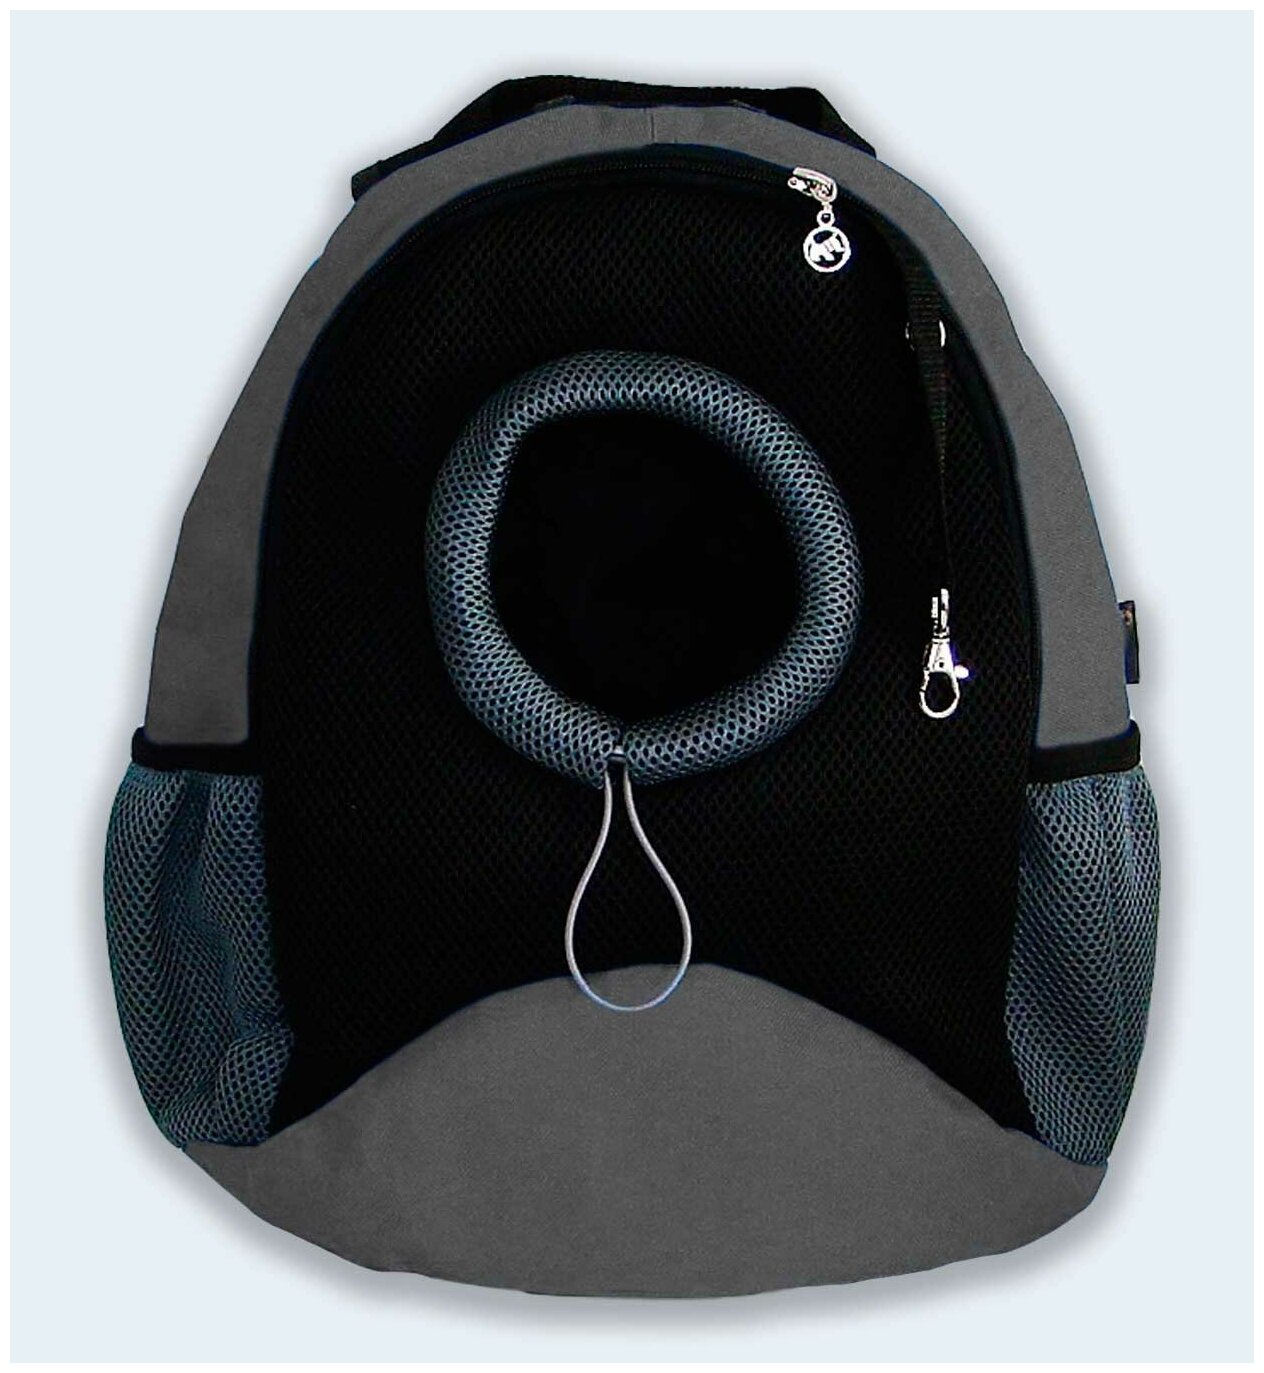 Рюкзак для собак и кошек Melenni Эконом M серый/черная сетка, 41x38x22, см; Вес: 600 гр.